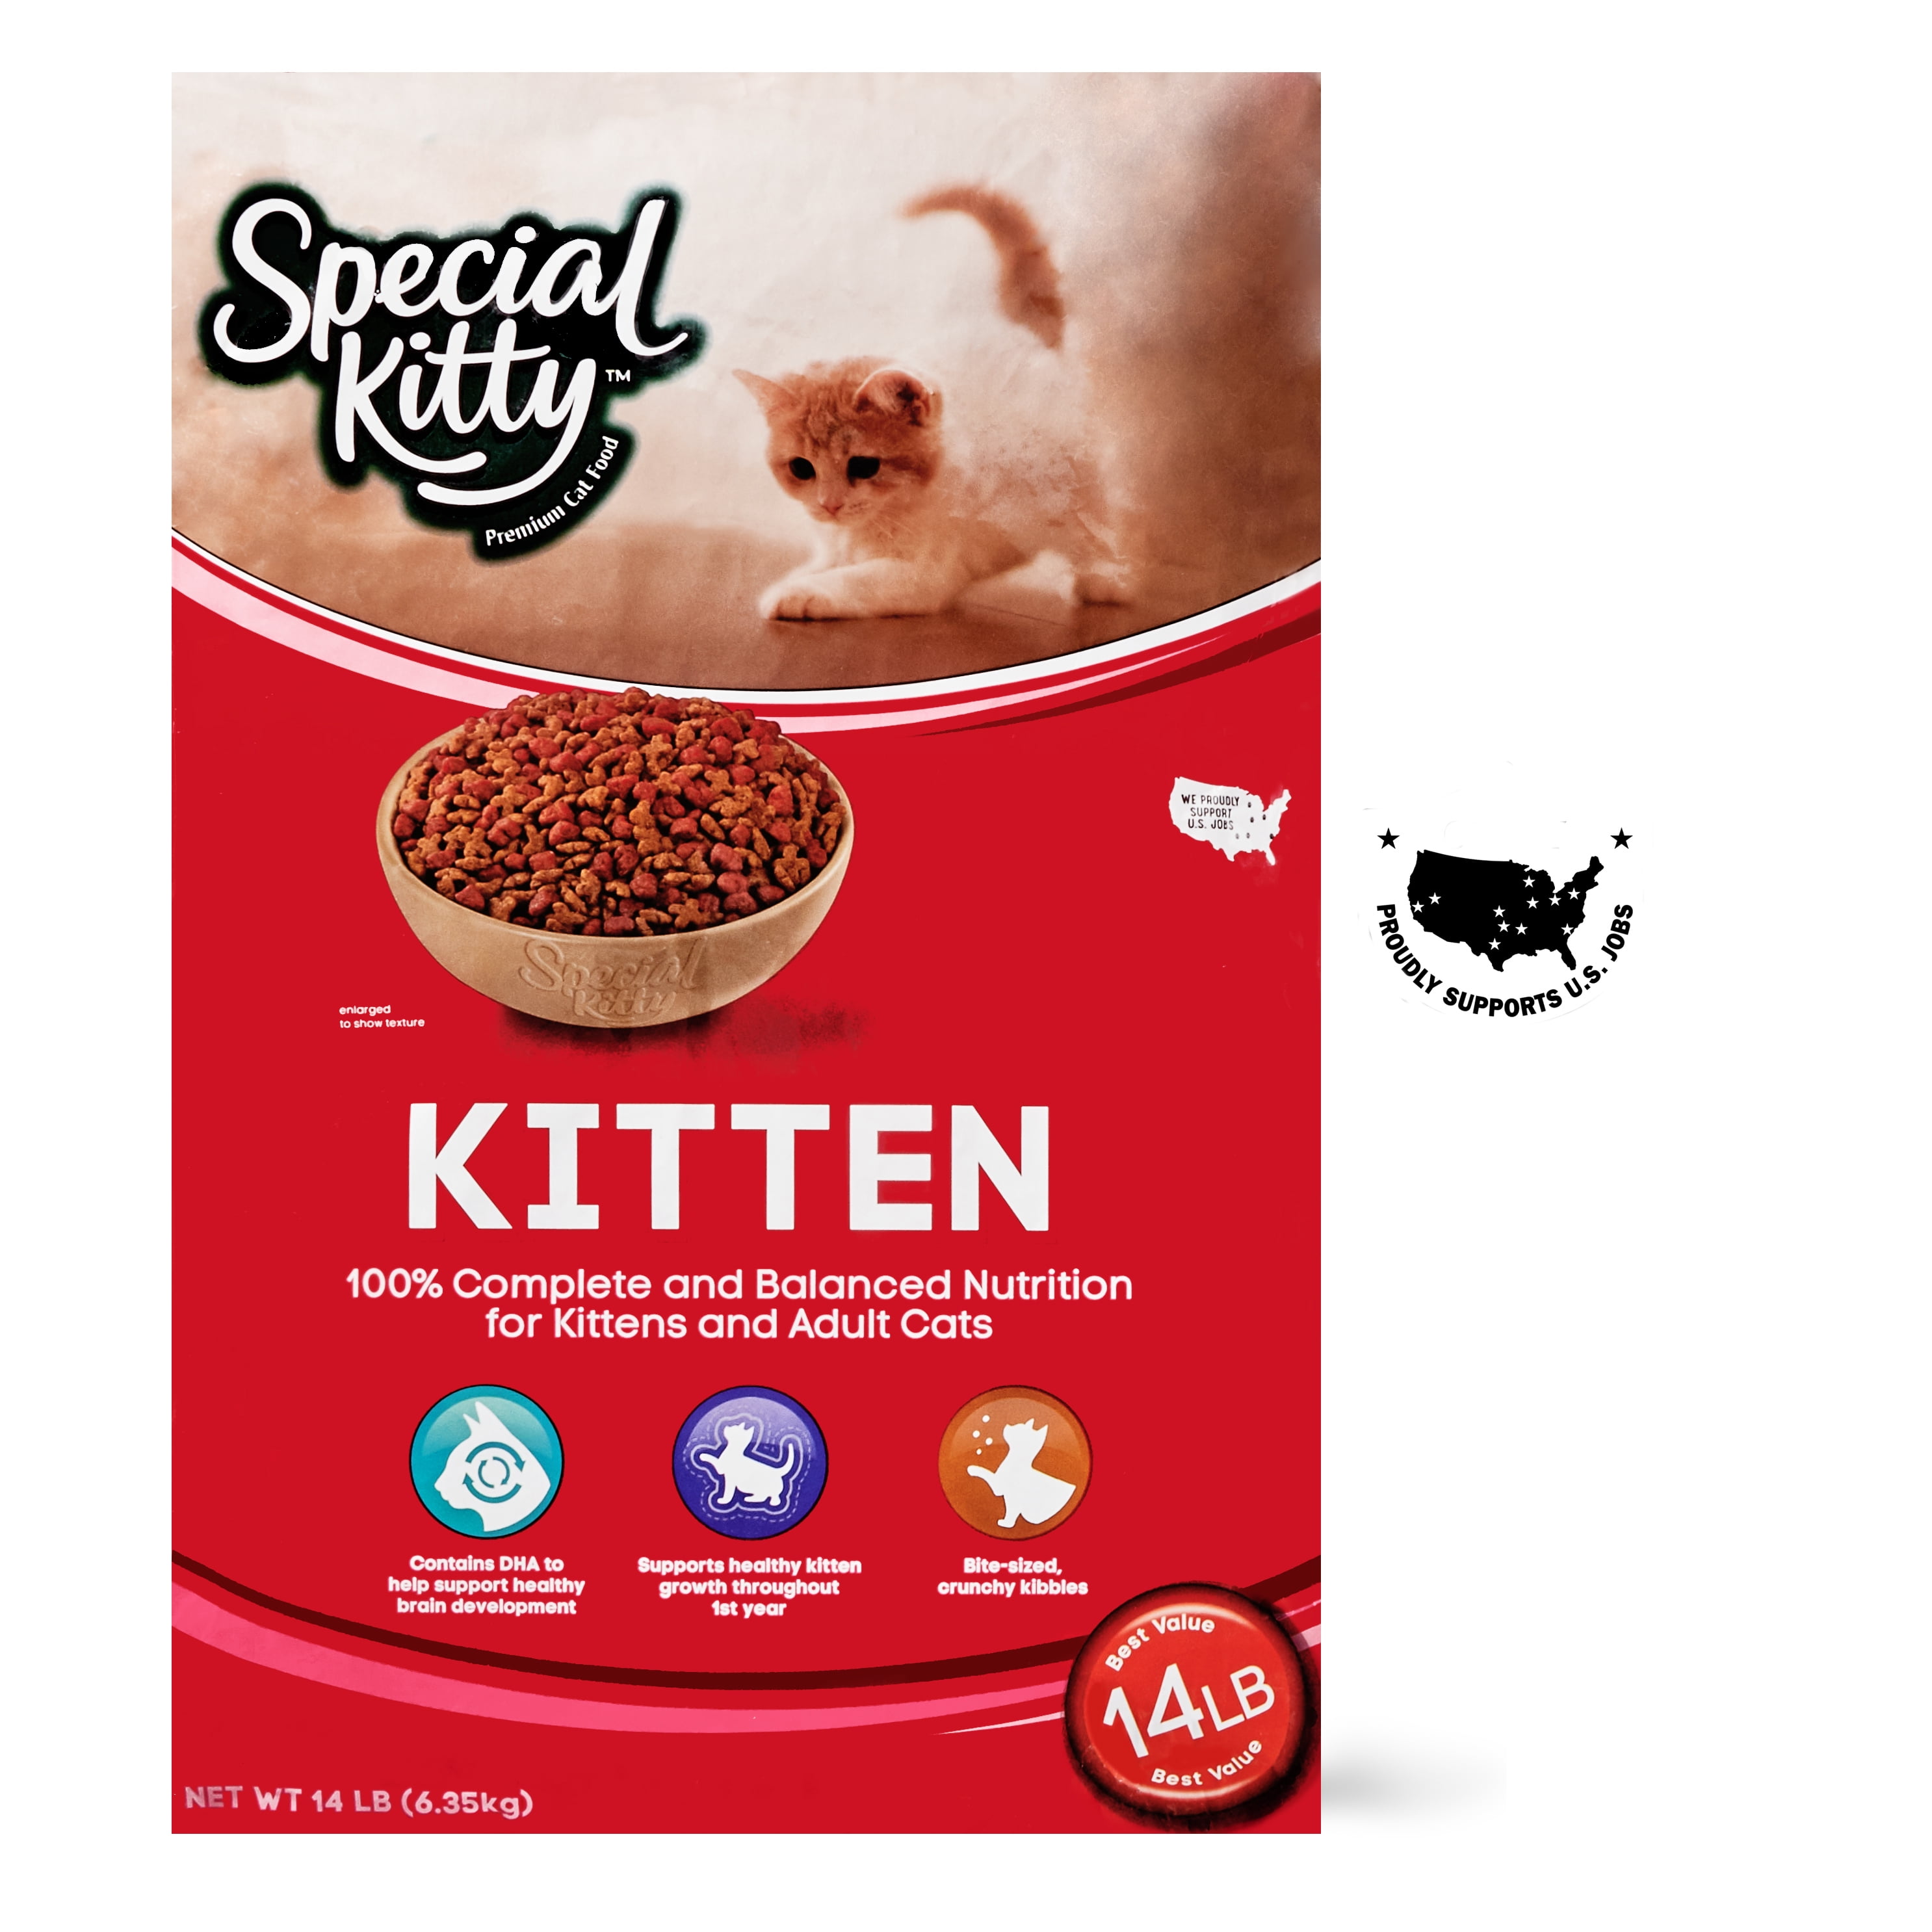 Kitten Chow Feeding Chart